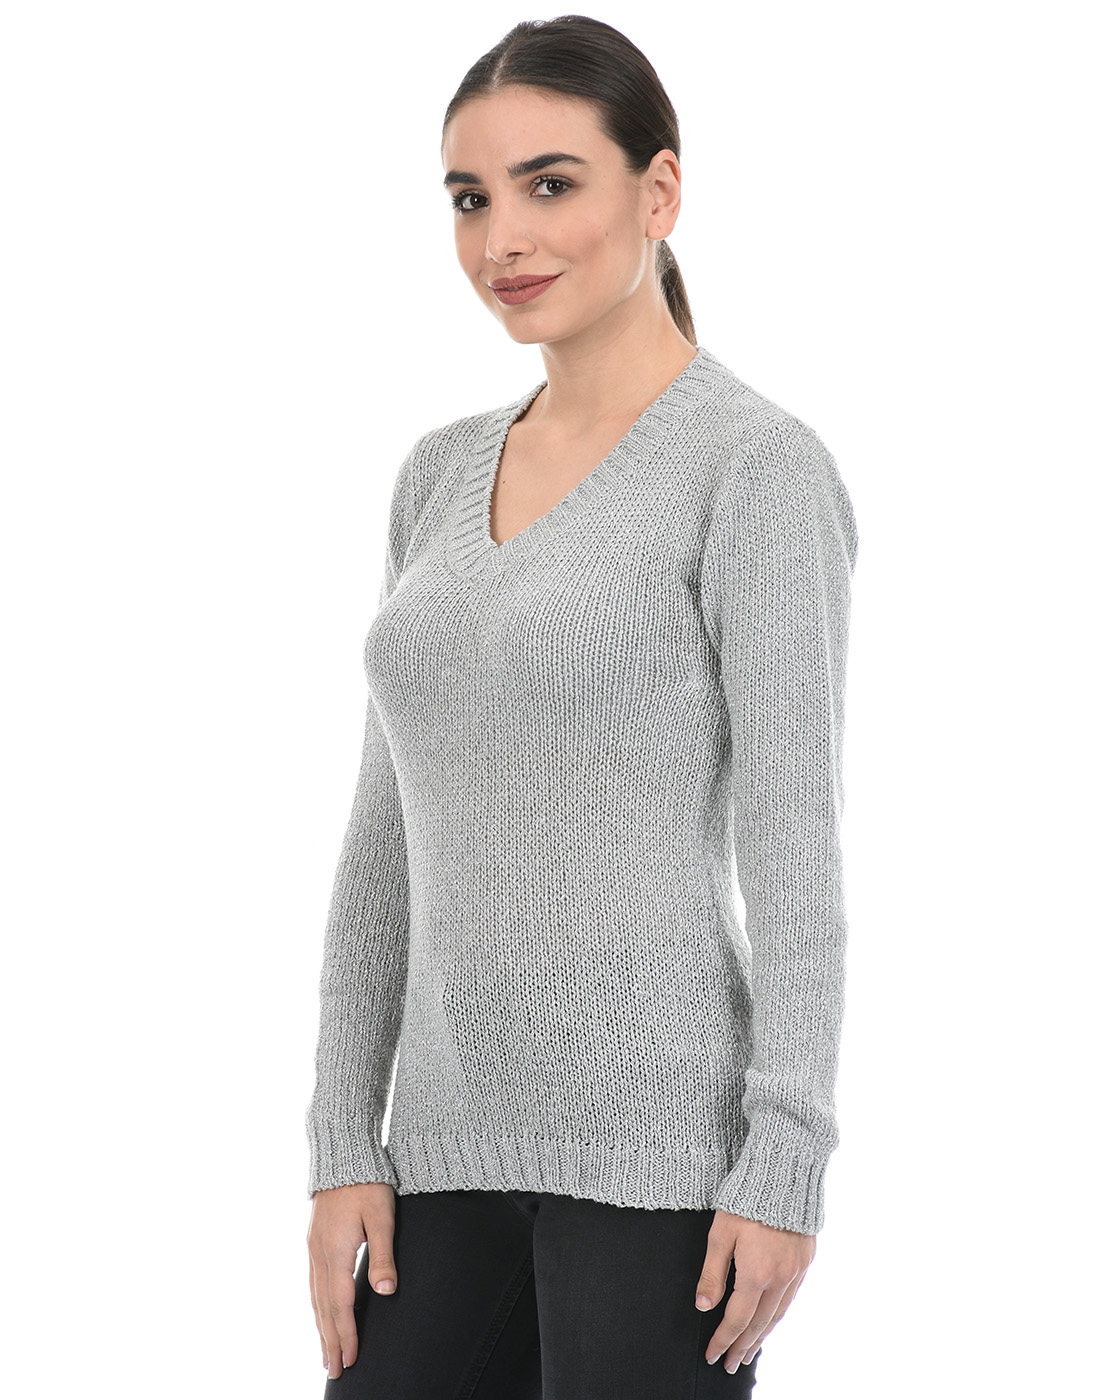 Species Women Grey Self Design Sweater